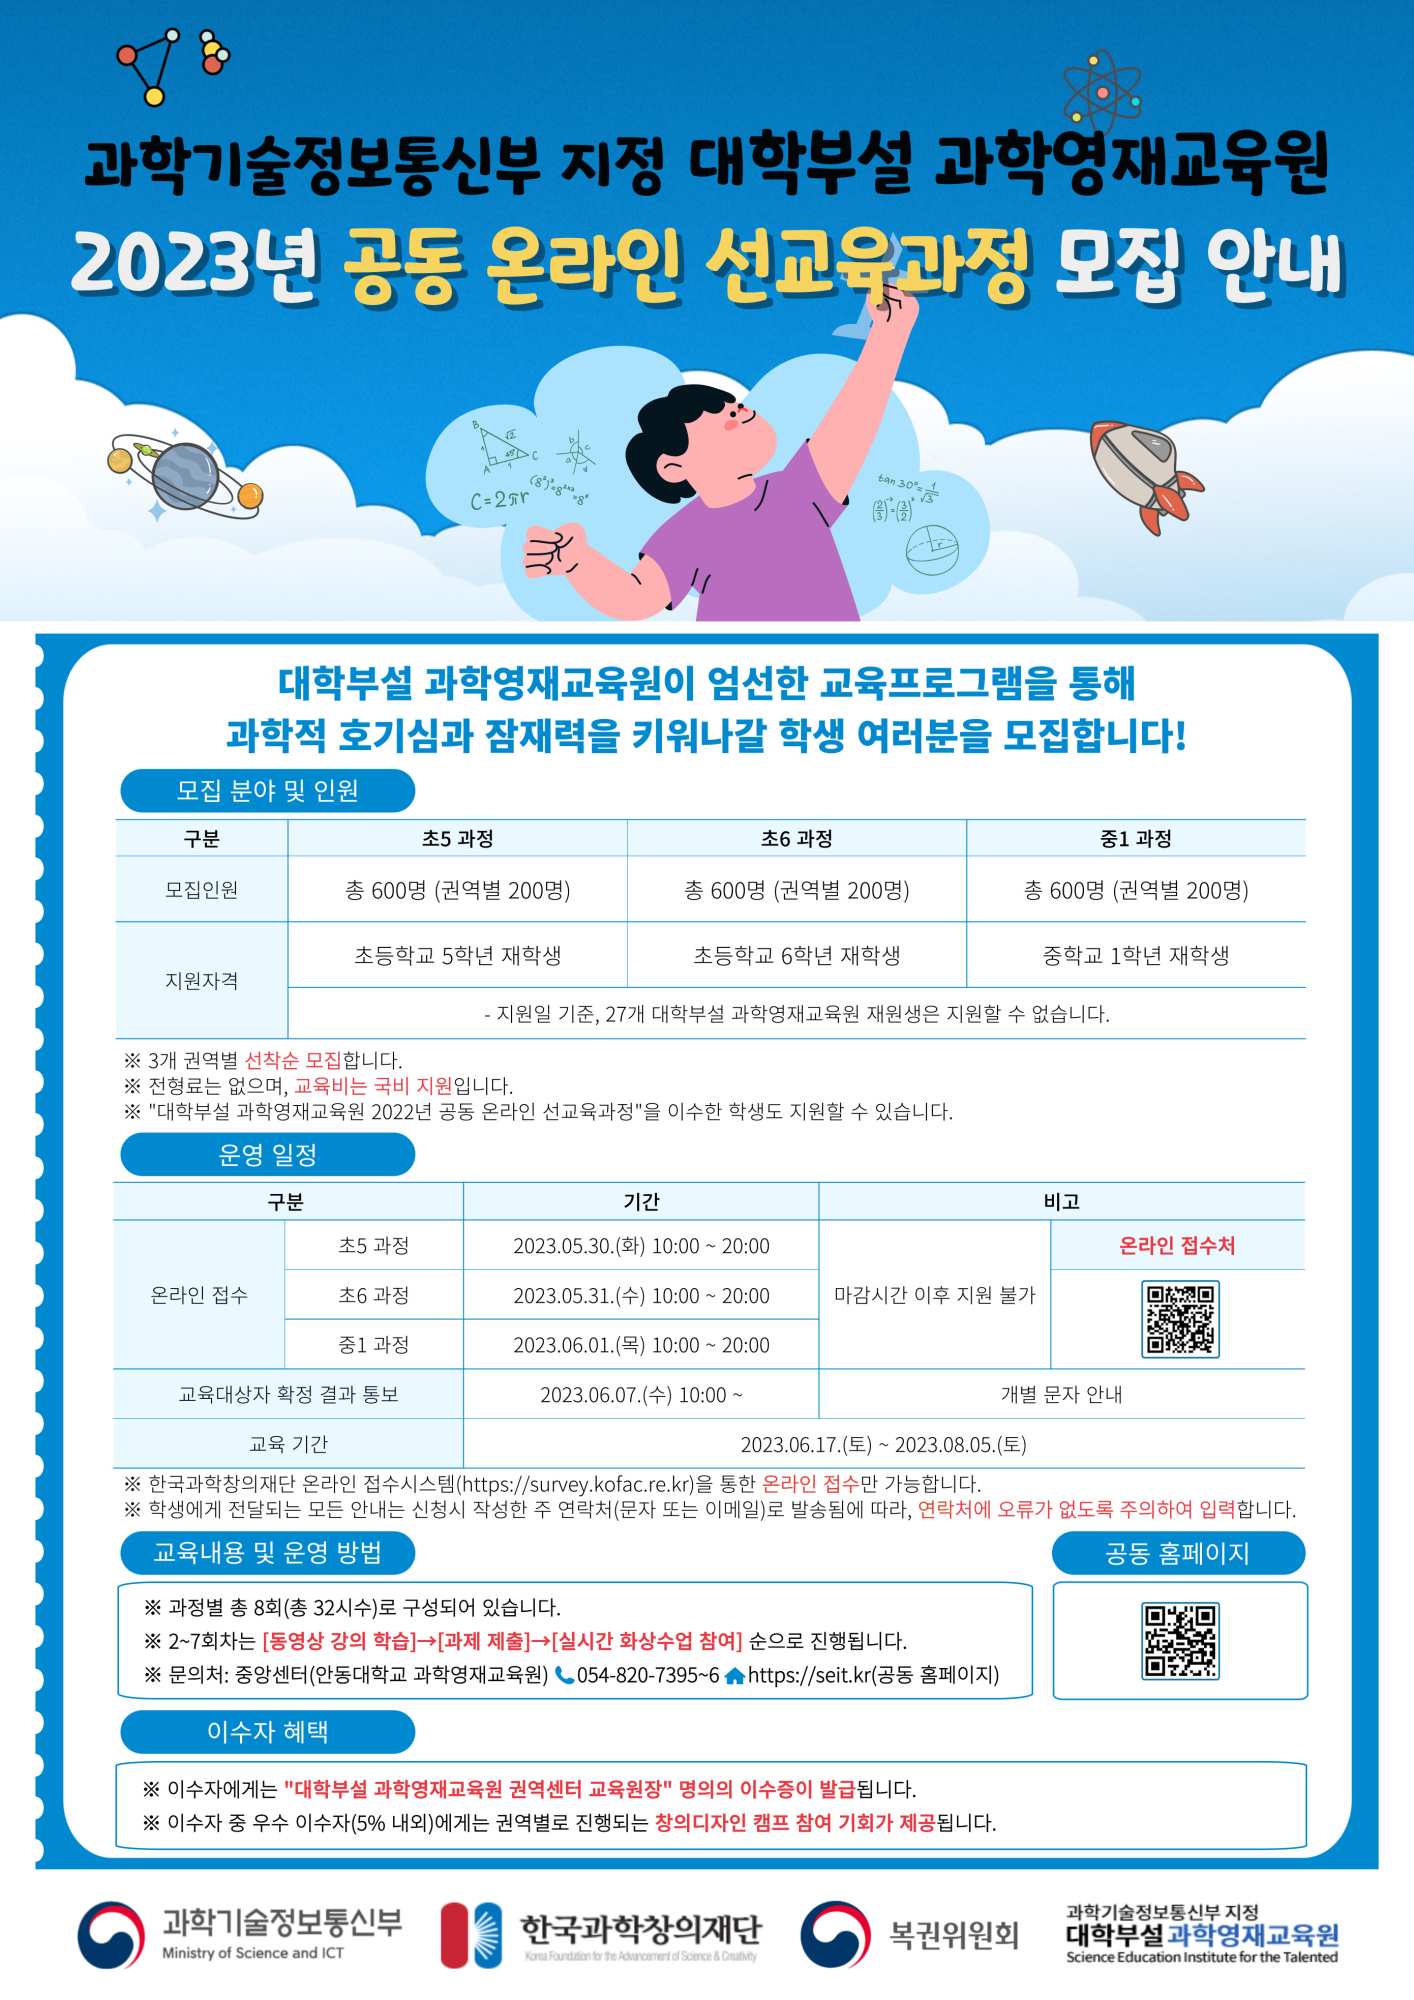 [붙임2] 2023 선교육과정 포스터_원본